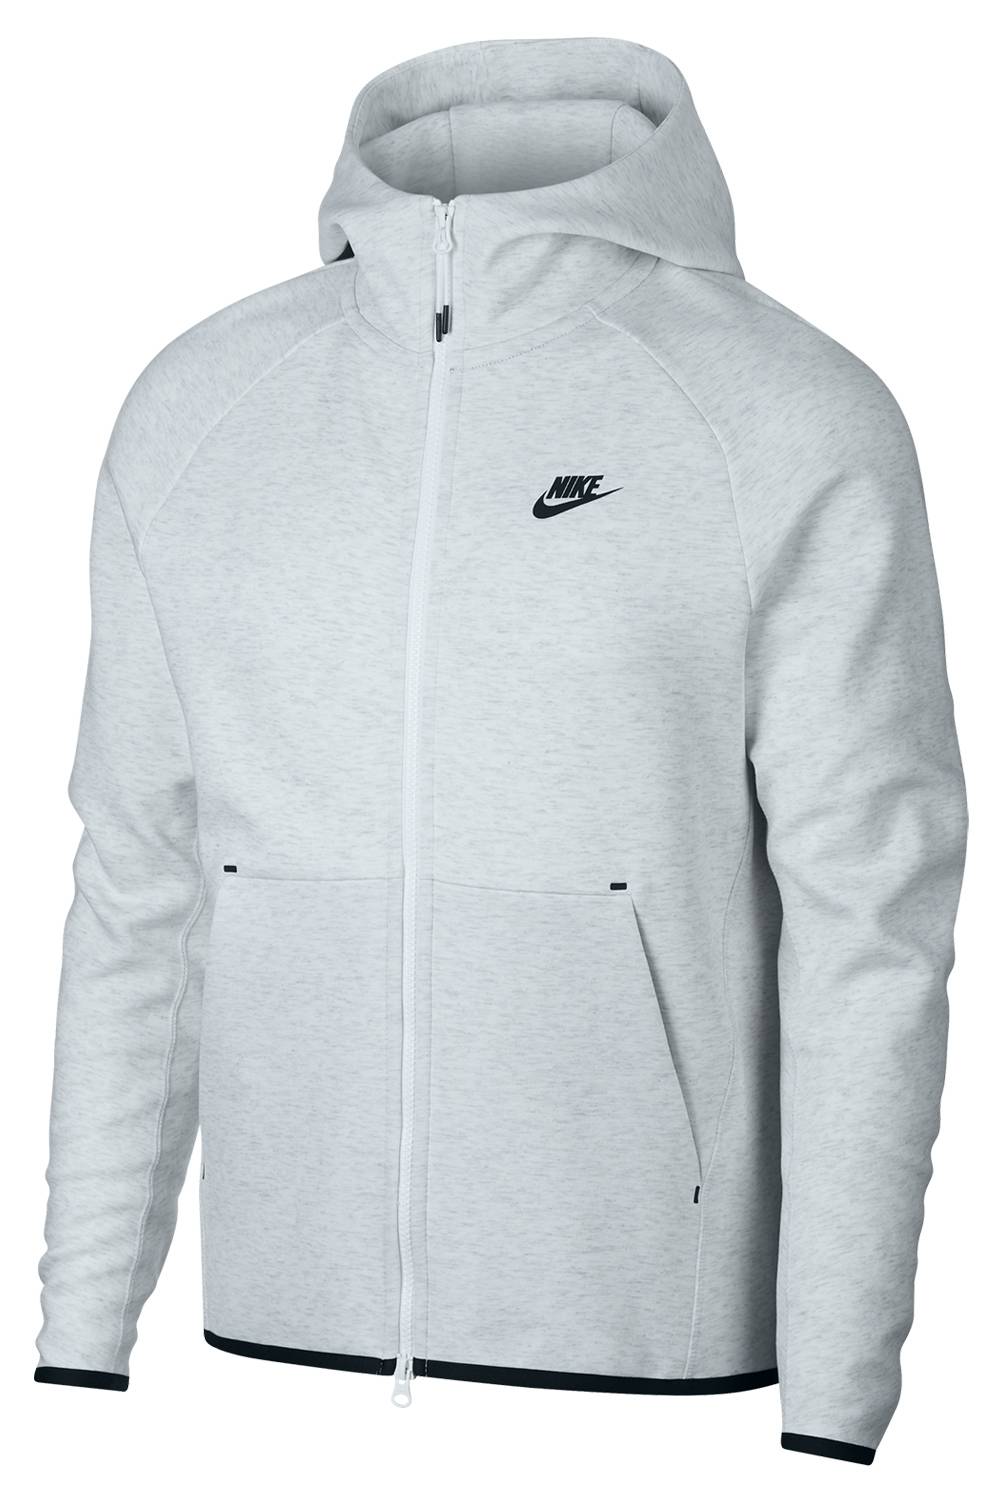 Nike - Polerón Sportswear Tech Fleece